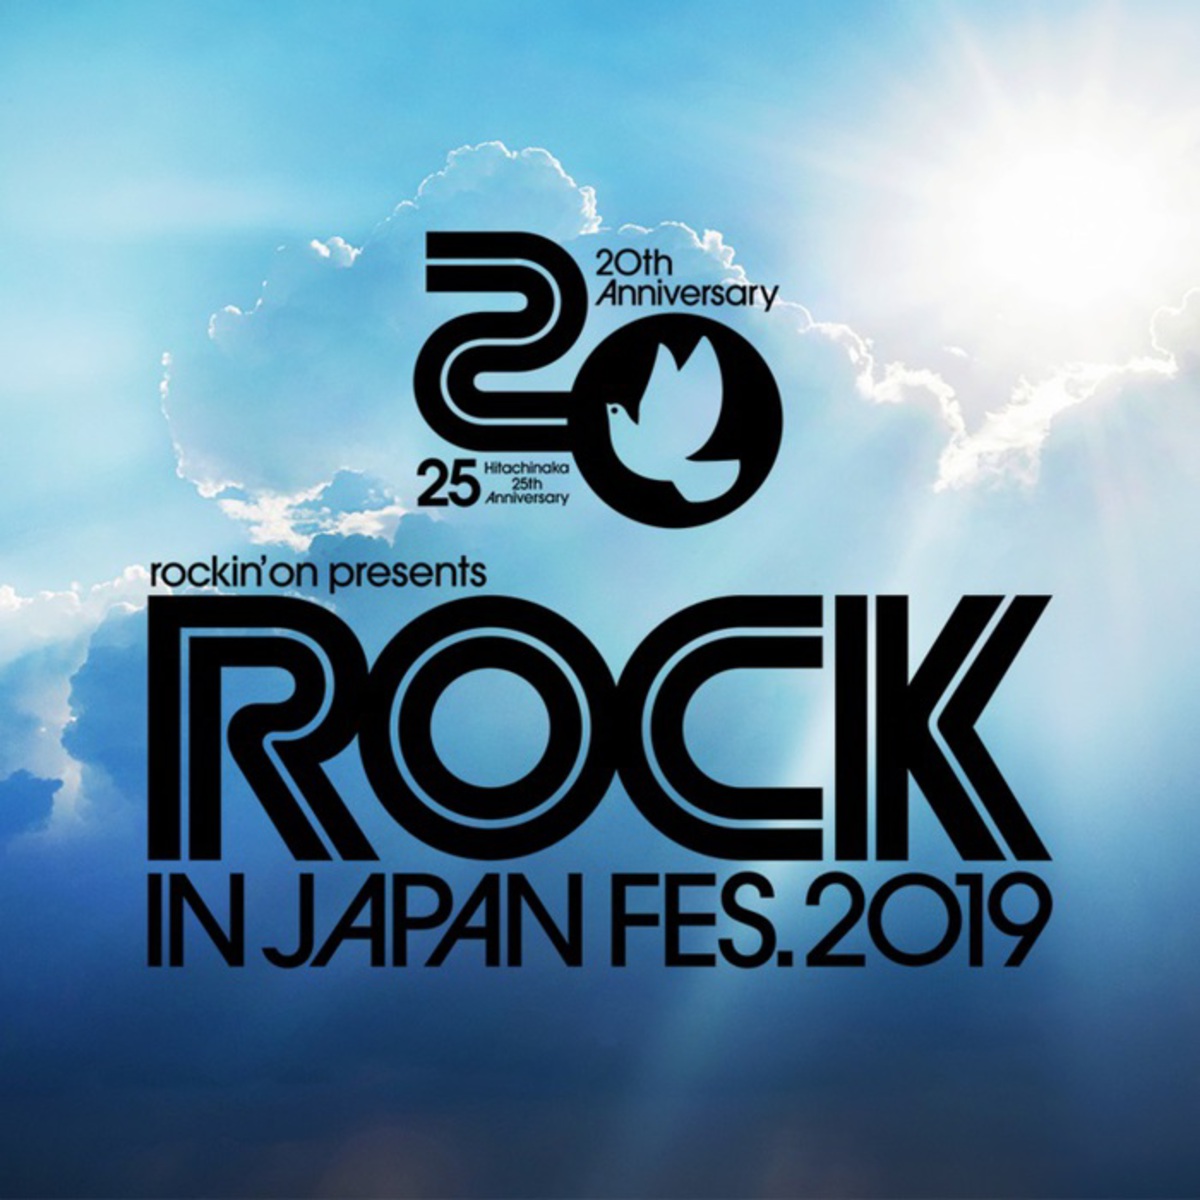 ROCK IN JAPAN FESTIVAL 2019